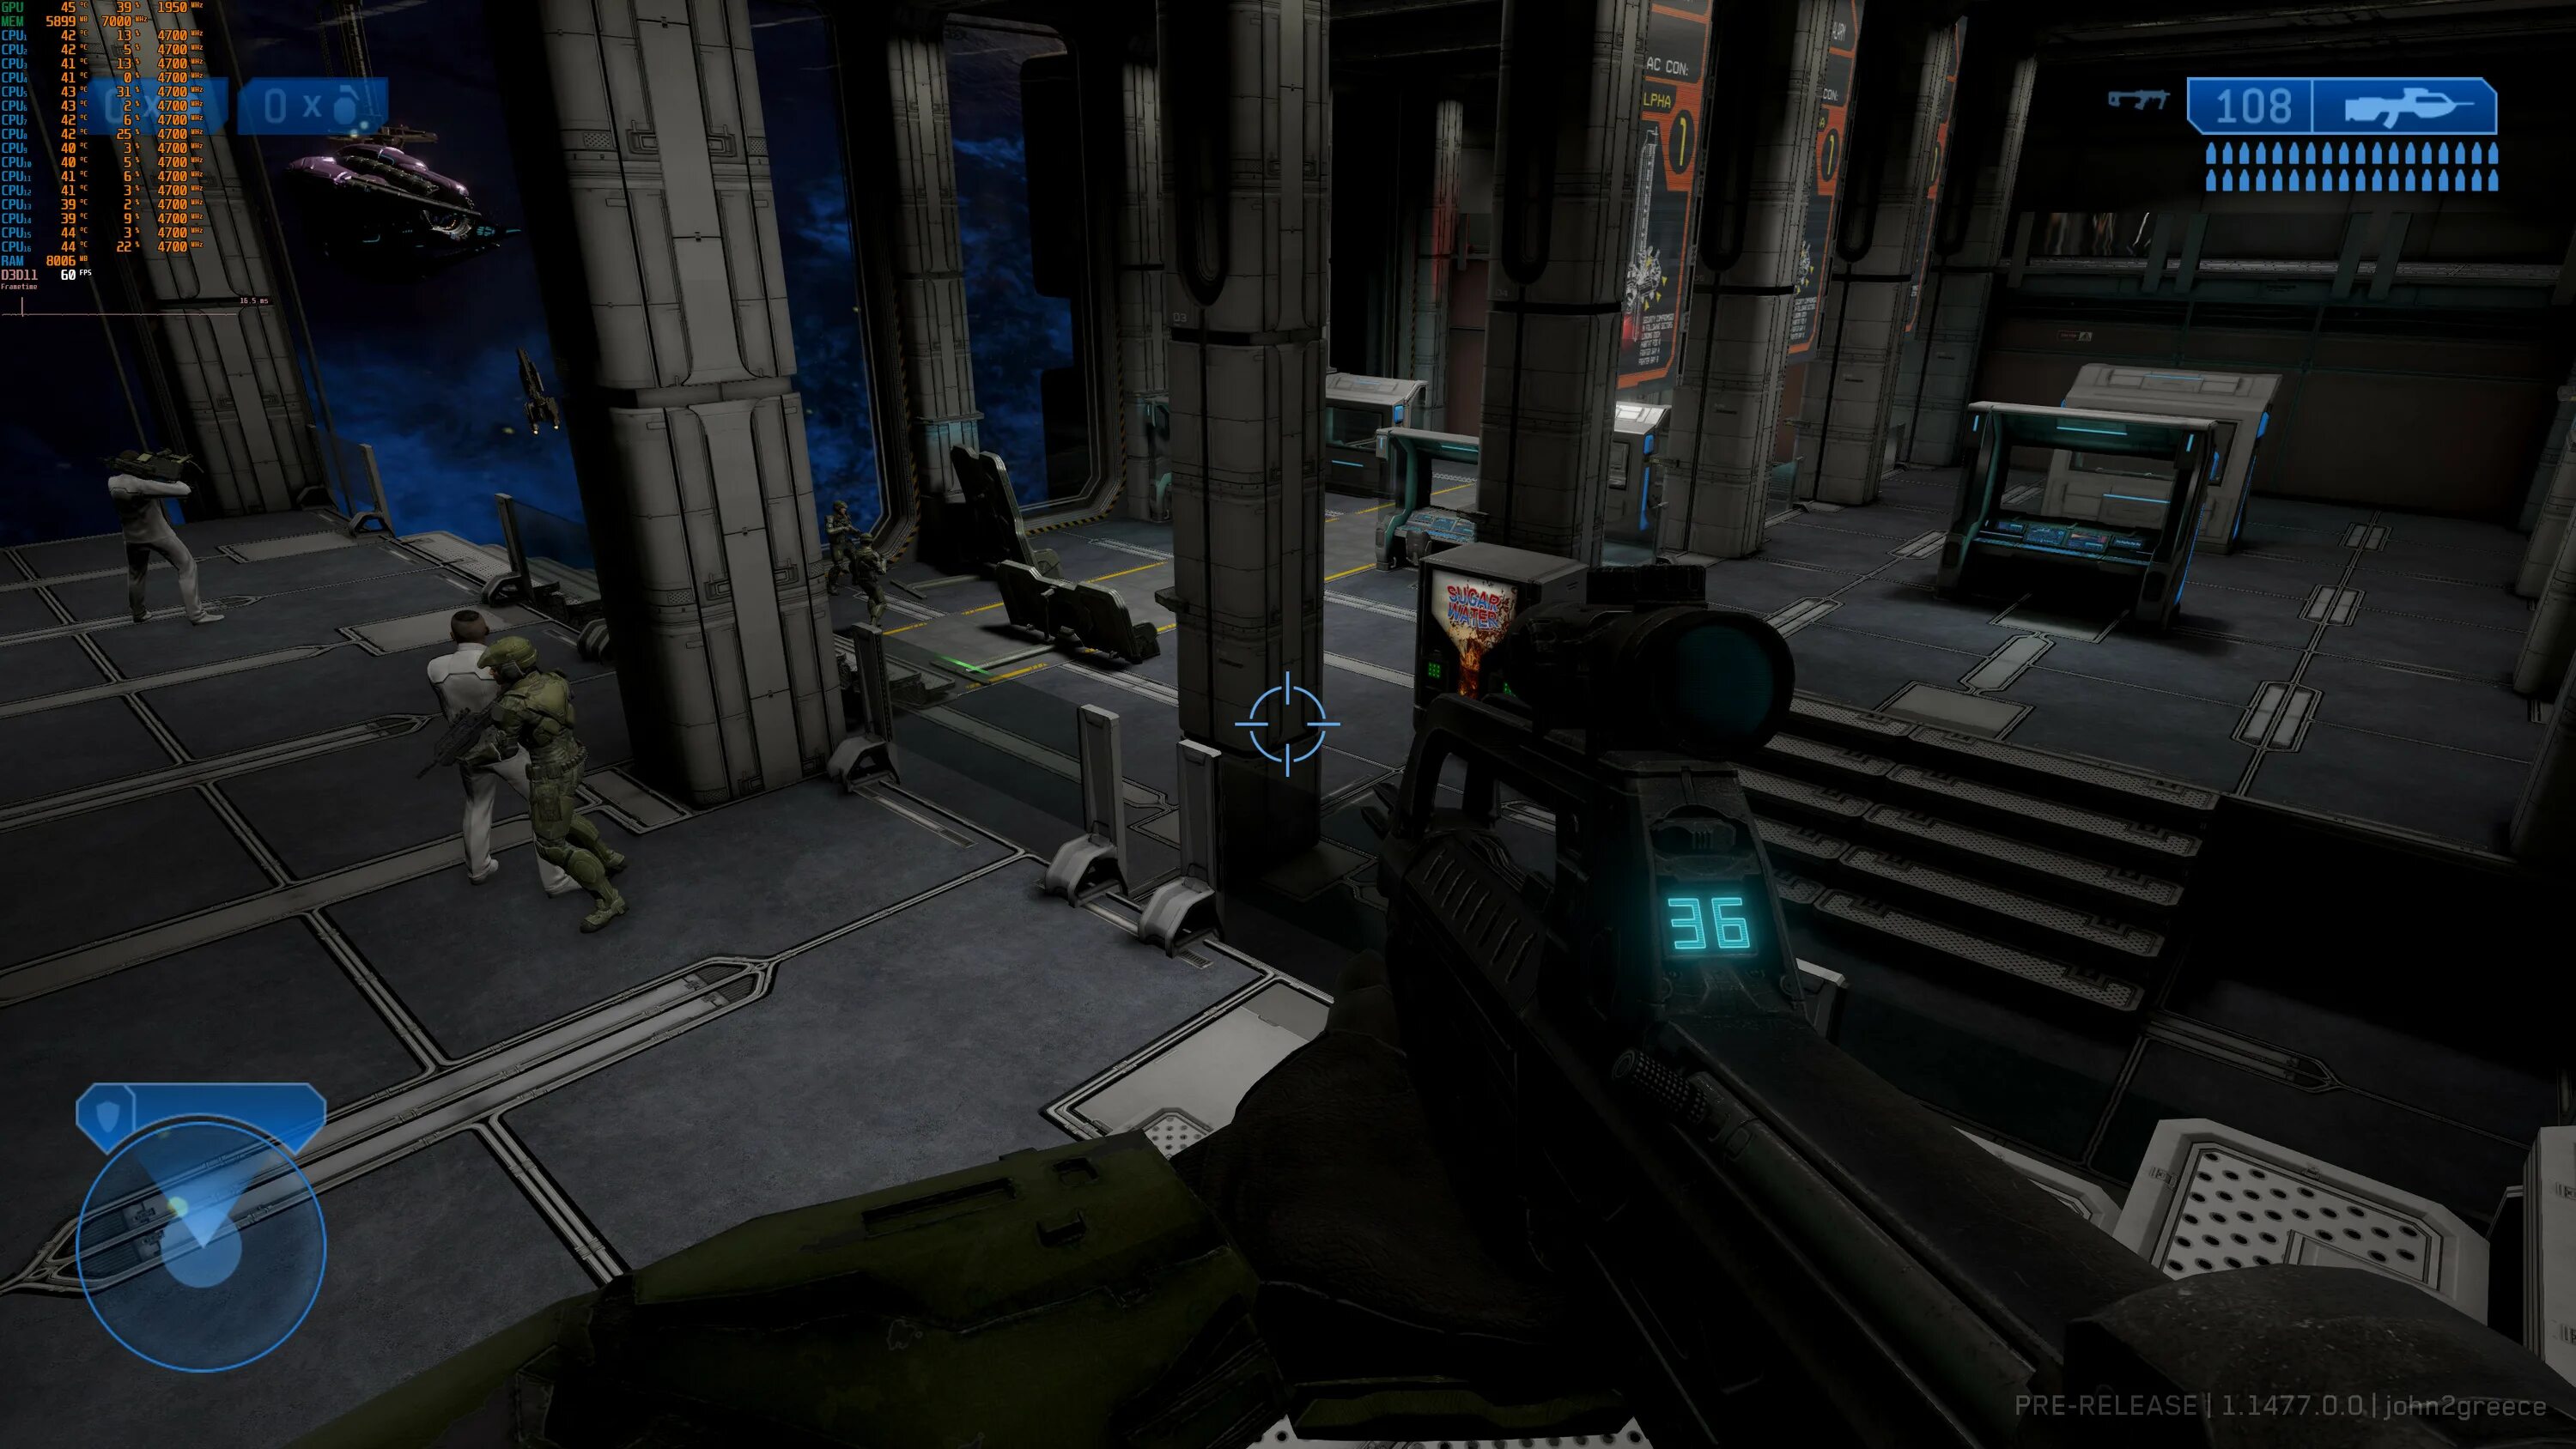 Halo 2 ремастер. Хало 2 ремастер Скриншоты. Halo 2 Anniversary Скриншоты. Halo 2 ремастер Чиф. Игры стали синими